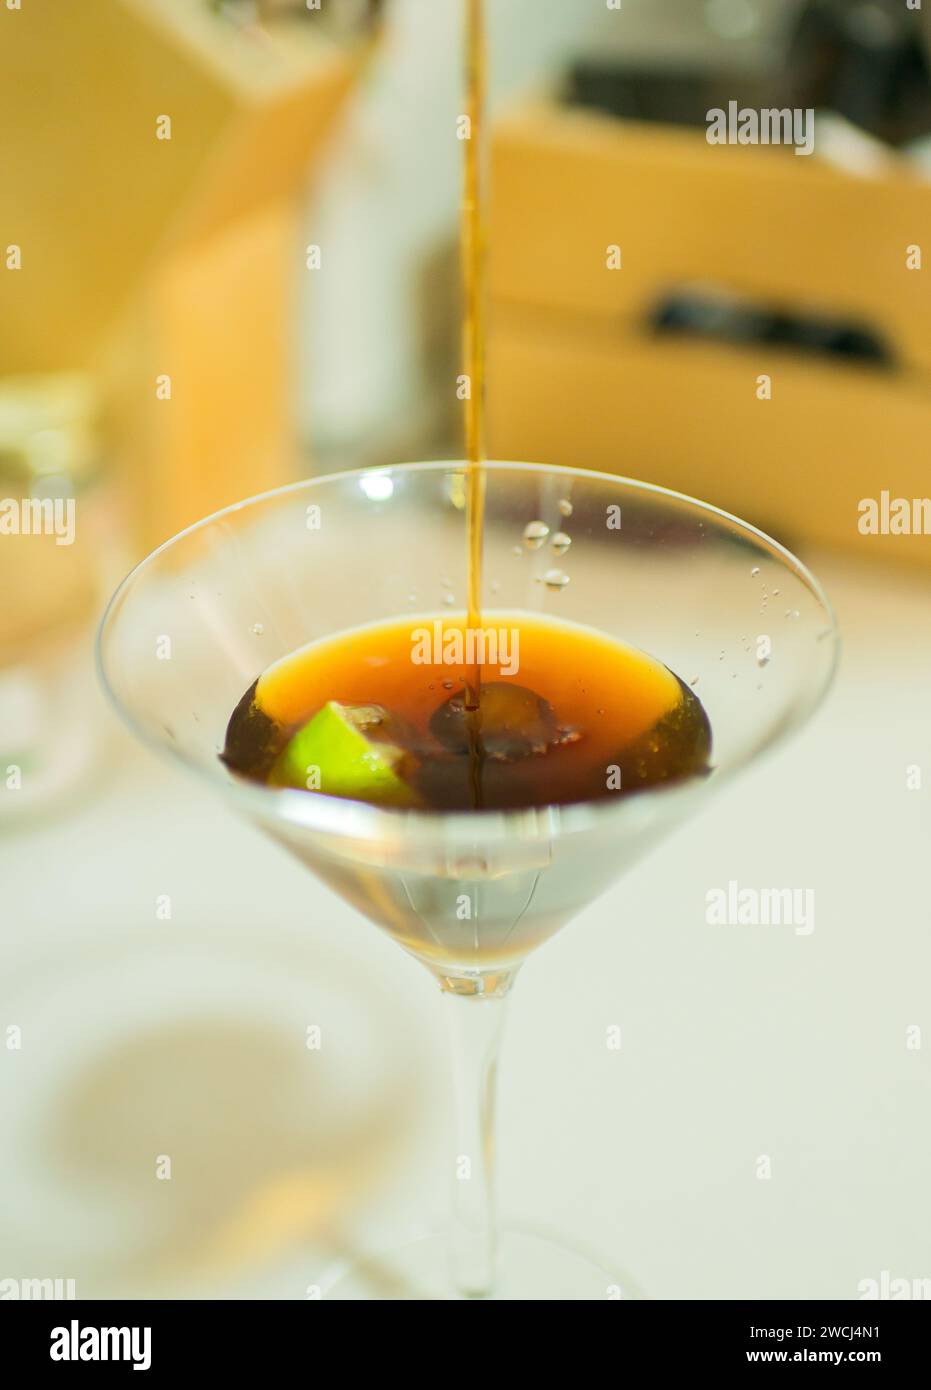 Martini in una cucina domestica. Mezzo bicchiere pieno Foto Stock